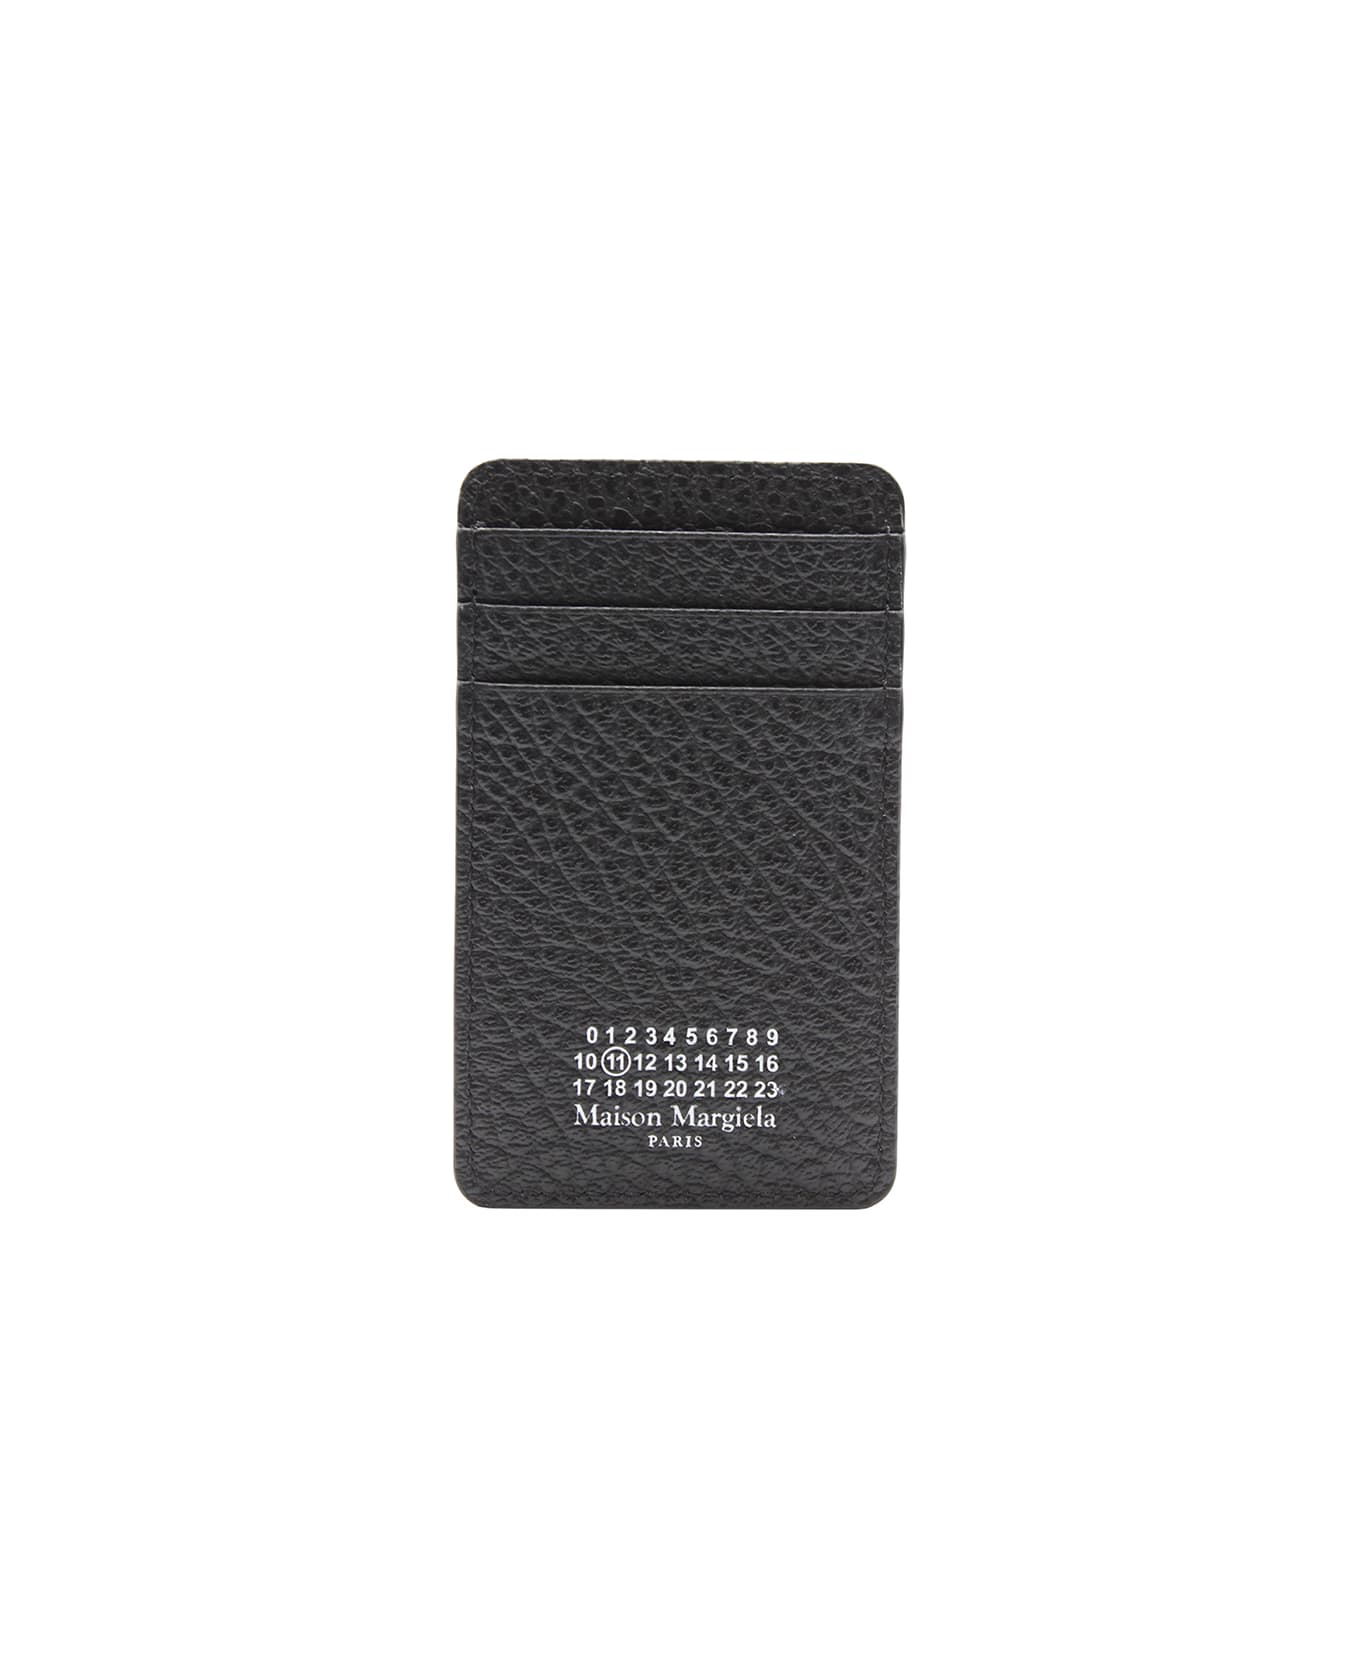 Maison Margiela Card Case - Black 財布